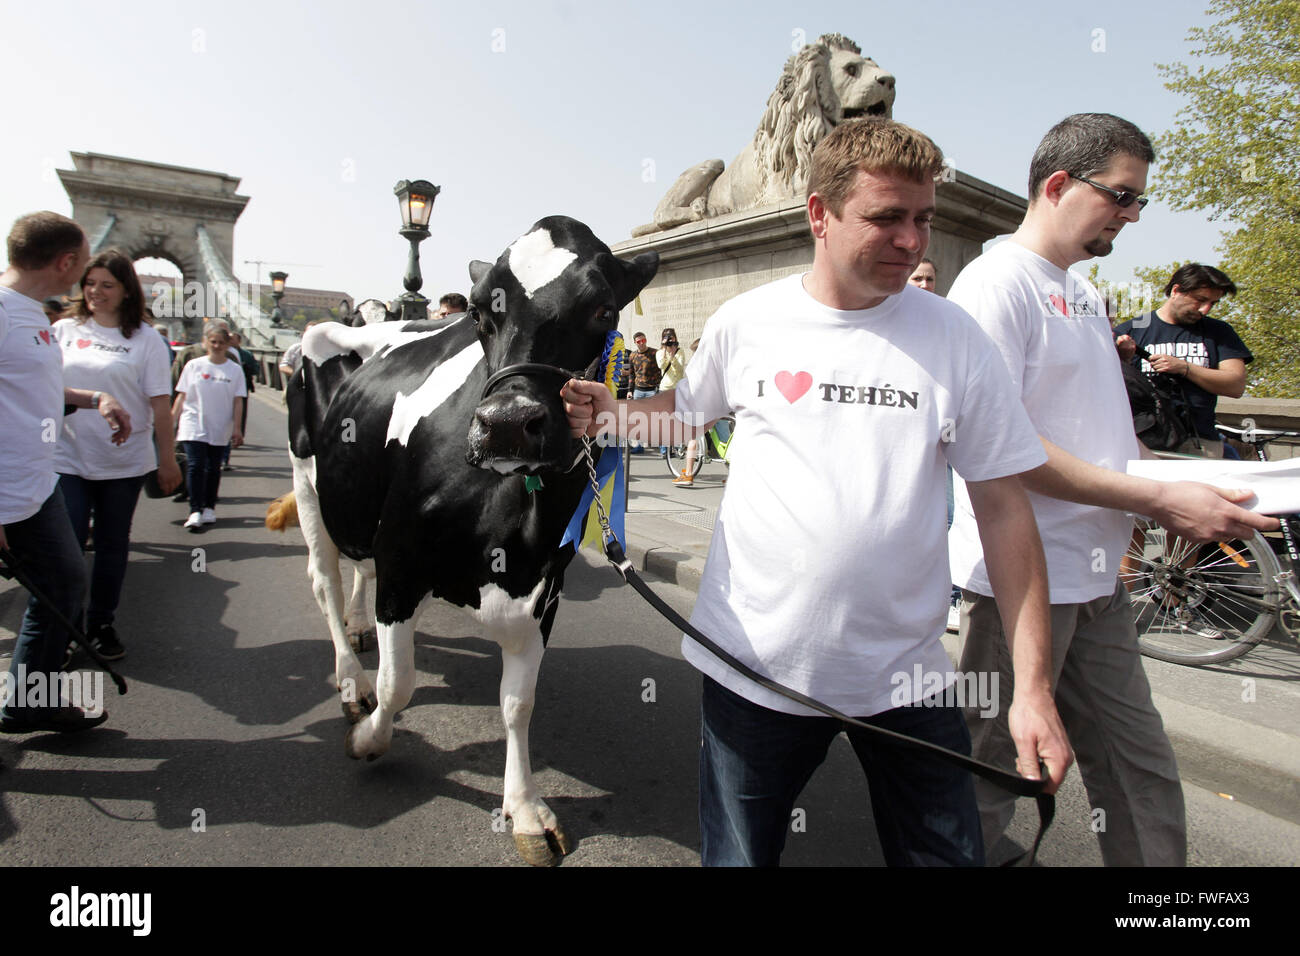 (160405)--BUDAPEST, 5. April 2016 (Xinhua)--ungarische Milchbauern marschierten mit ihren Kühen auf den Straßen die niedrigen Milchpreise zu protestieren und fordern eine günstigere Absatzchancen in Budapest, Ungarn, 4. April 2016. (Xinhua/Csaba Domotor) Stockfoto